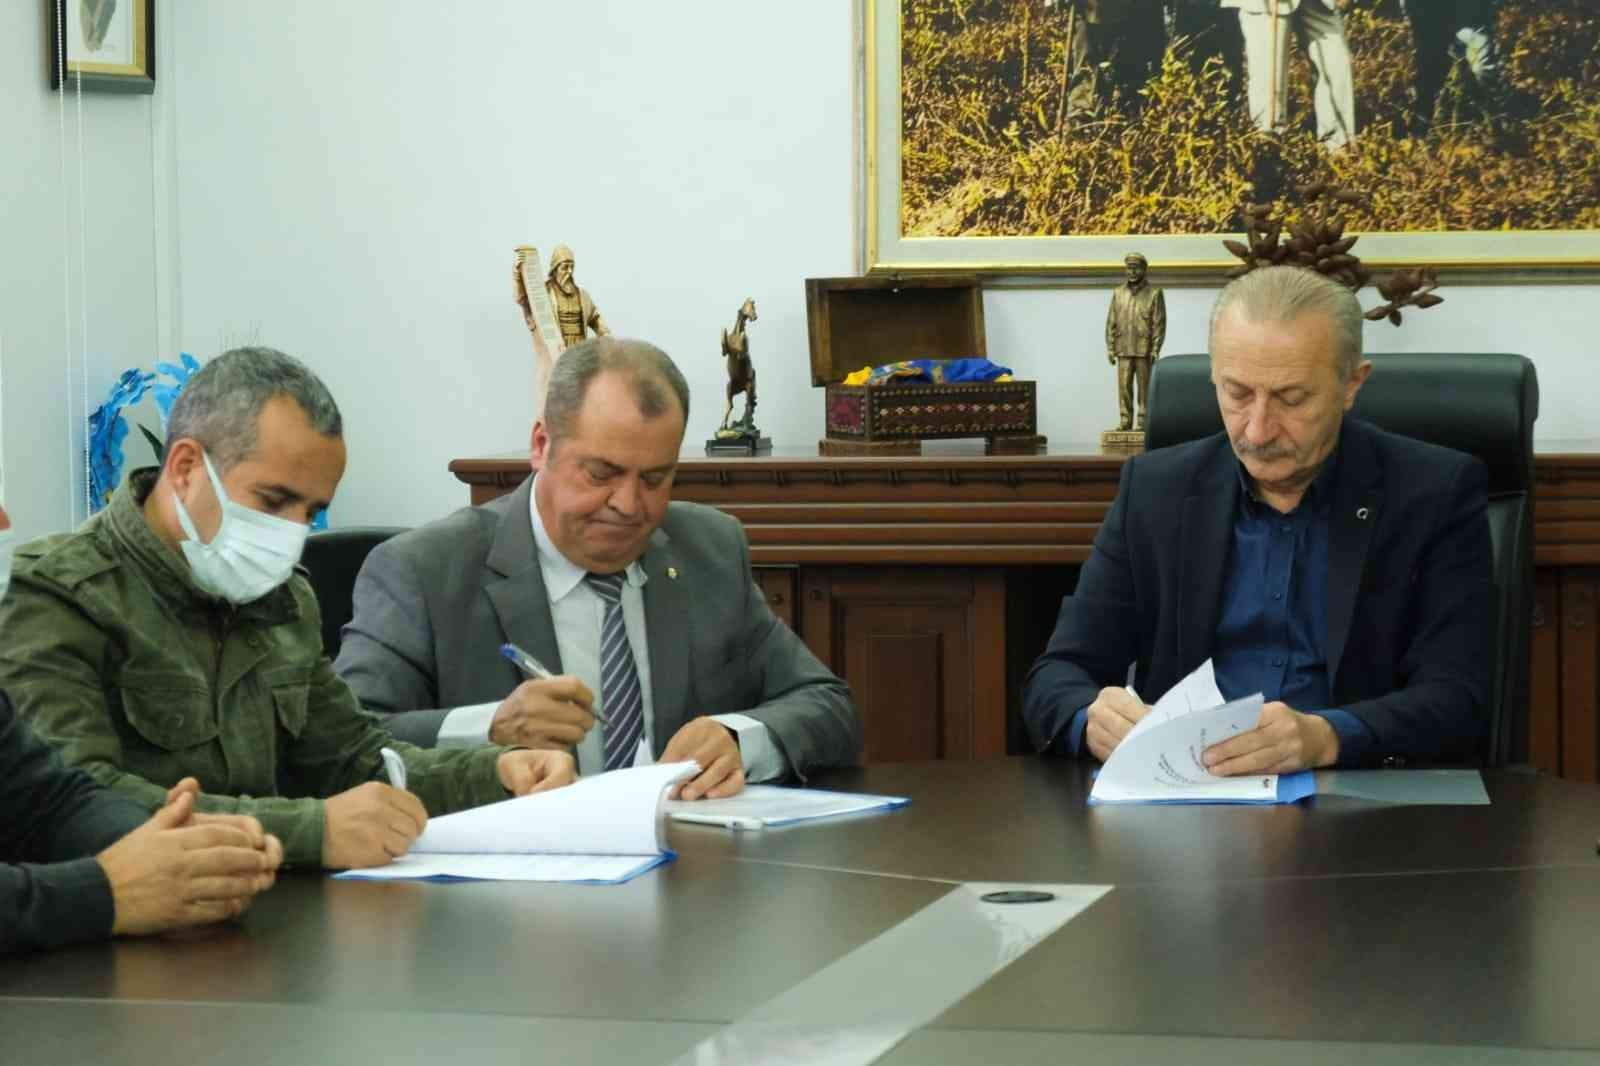 Didim Belediyesi ile Tüm-Bel Sen arasında toplu iş sözleşmesi imzalandı #aydin